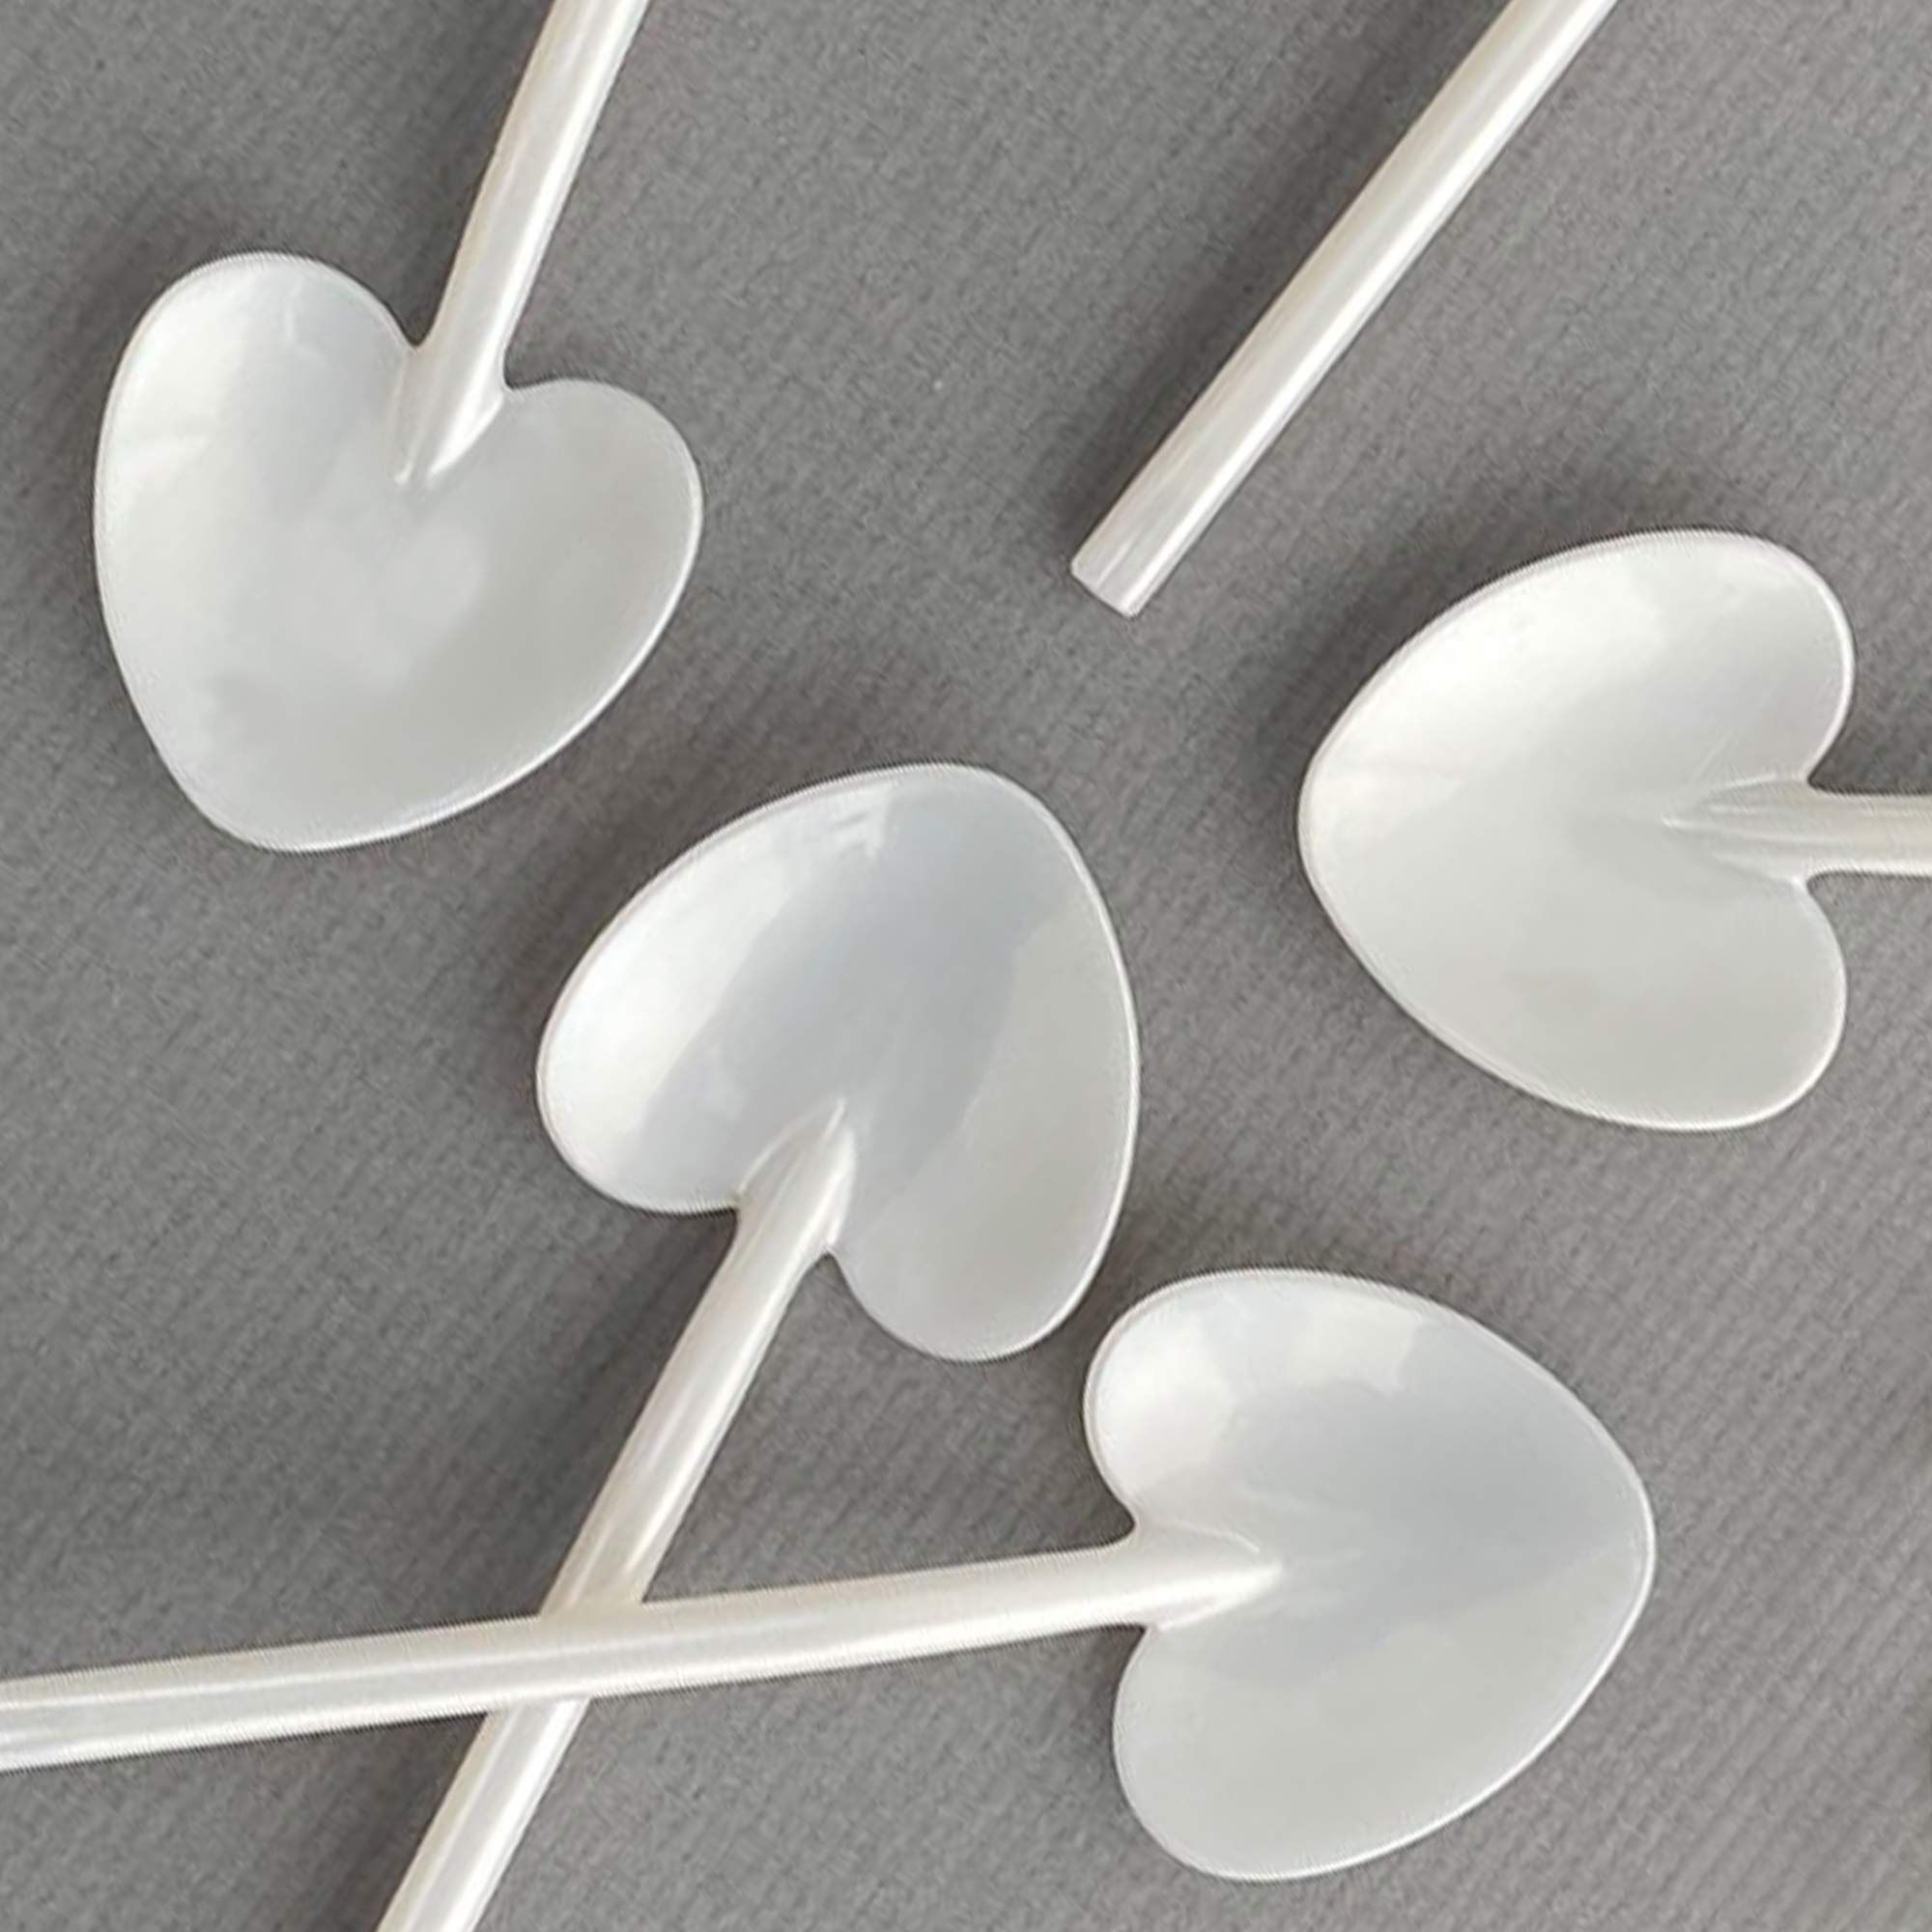 heart-shaped spoon